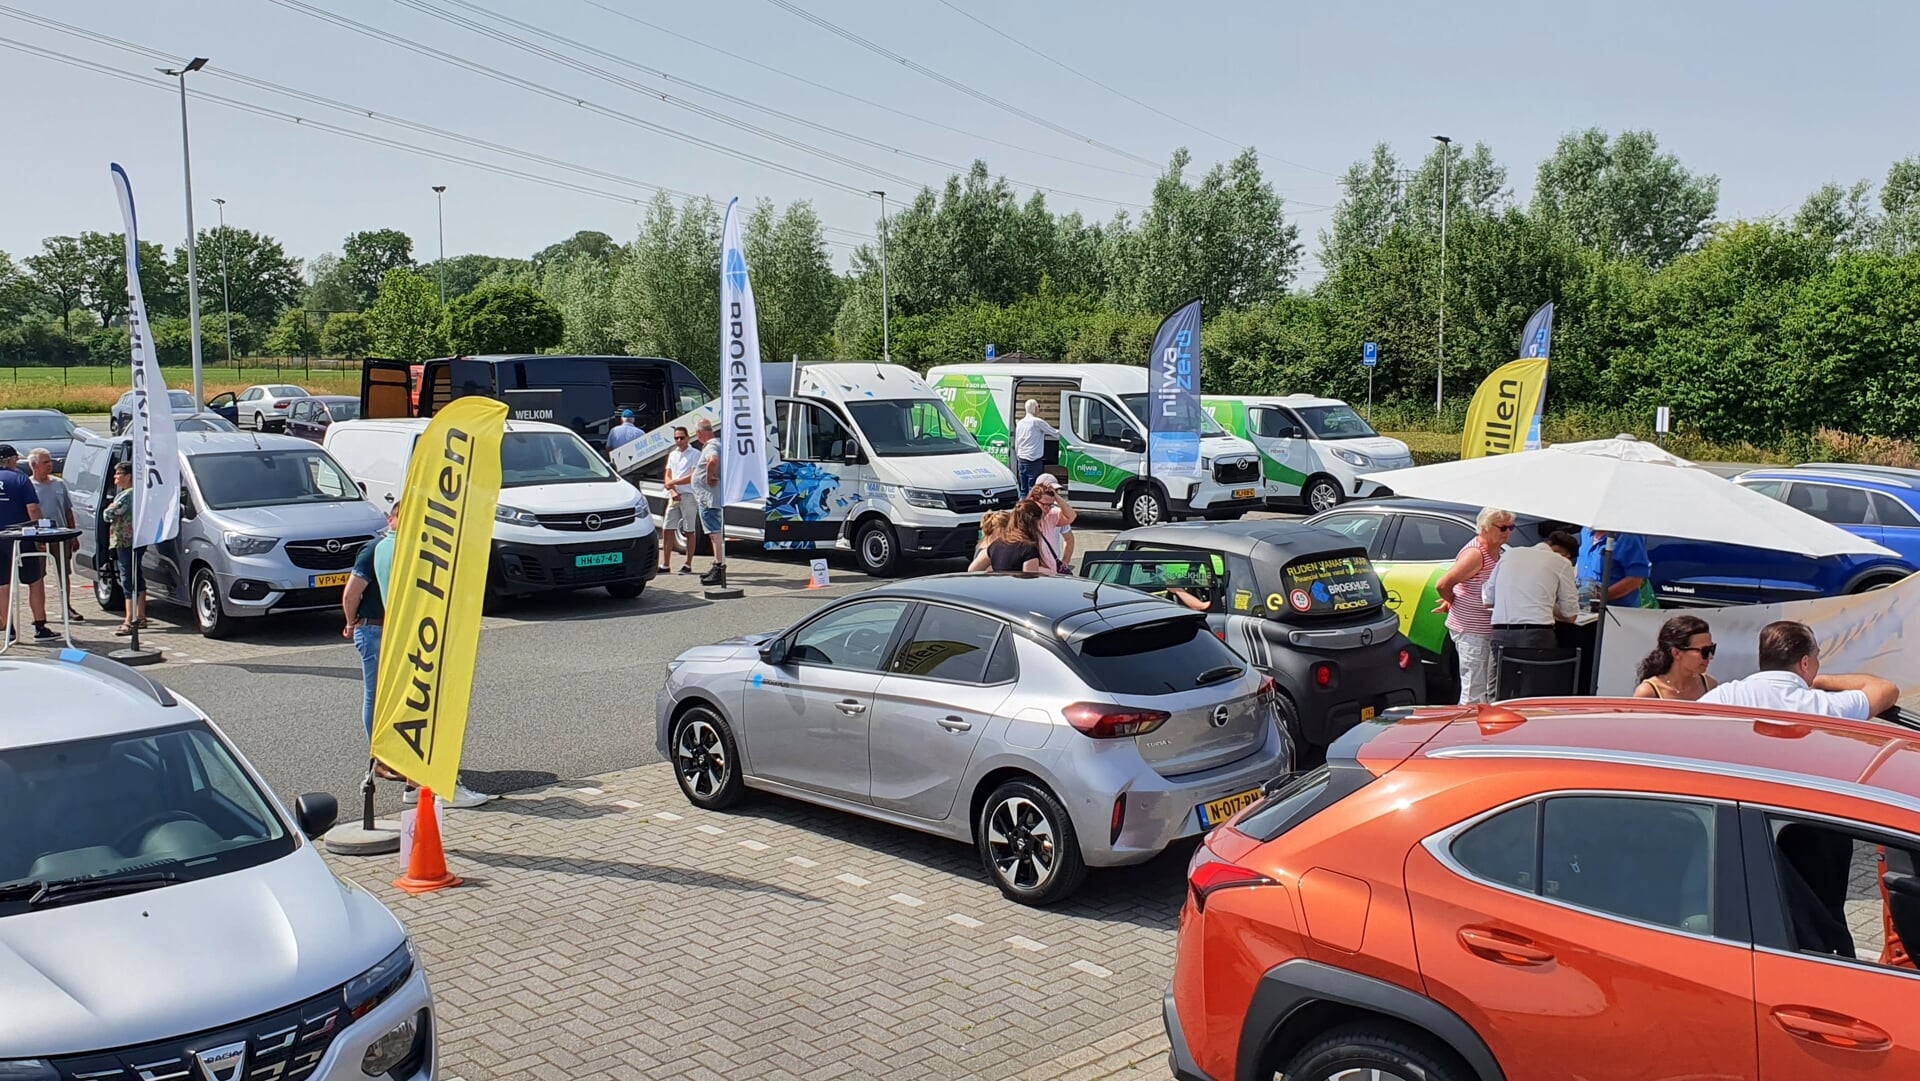 Op de elektrische mobiliteitsdag op 8 april in Zutphen stellen lokale dealers opnieuw veertig auto’s beschikbaar om te bekijken, vergelijken én erin te rijden. Foto: John Wolthuis